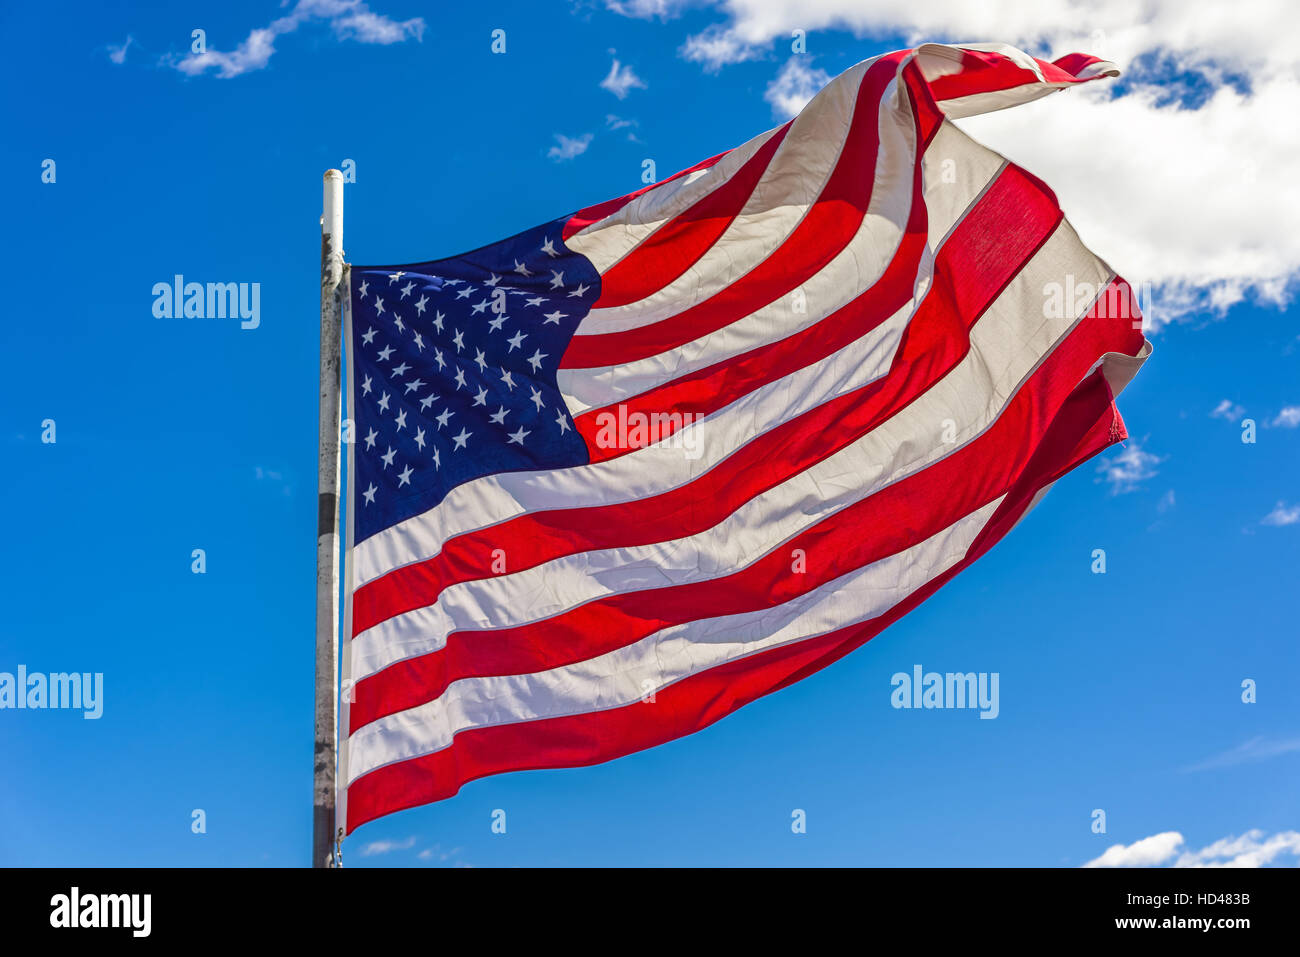 Flagge der Vereinigten Staaten von Amerika in Boston, USA. Freuen Sie sich auf 13 Streifen und 50 Sterne für jeden Staat. Die ursprüngliche Flagge mit dreizehn Sternen war ado Stockfoto